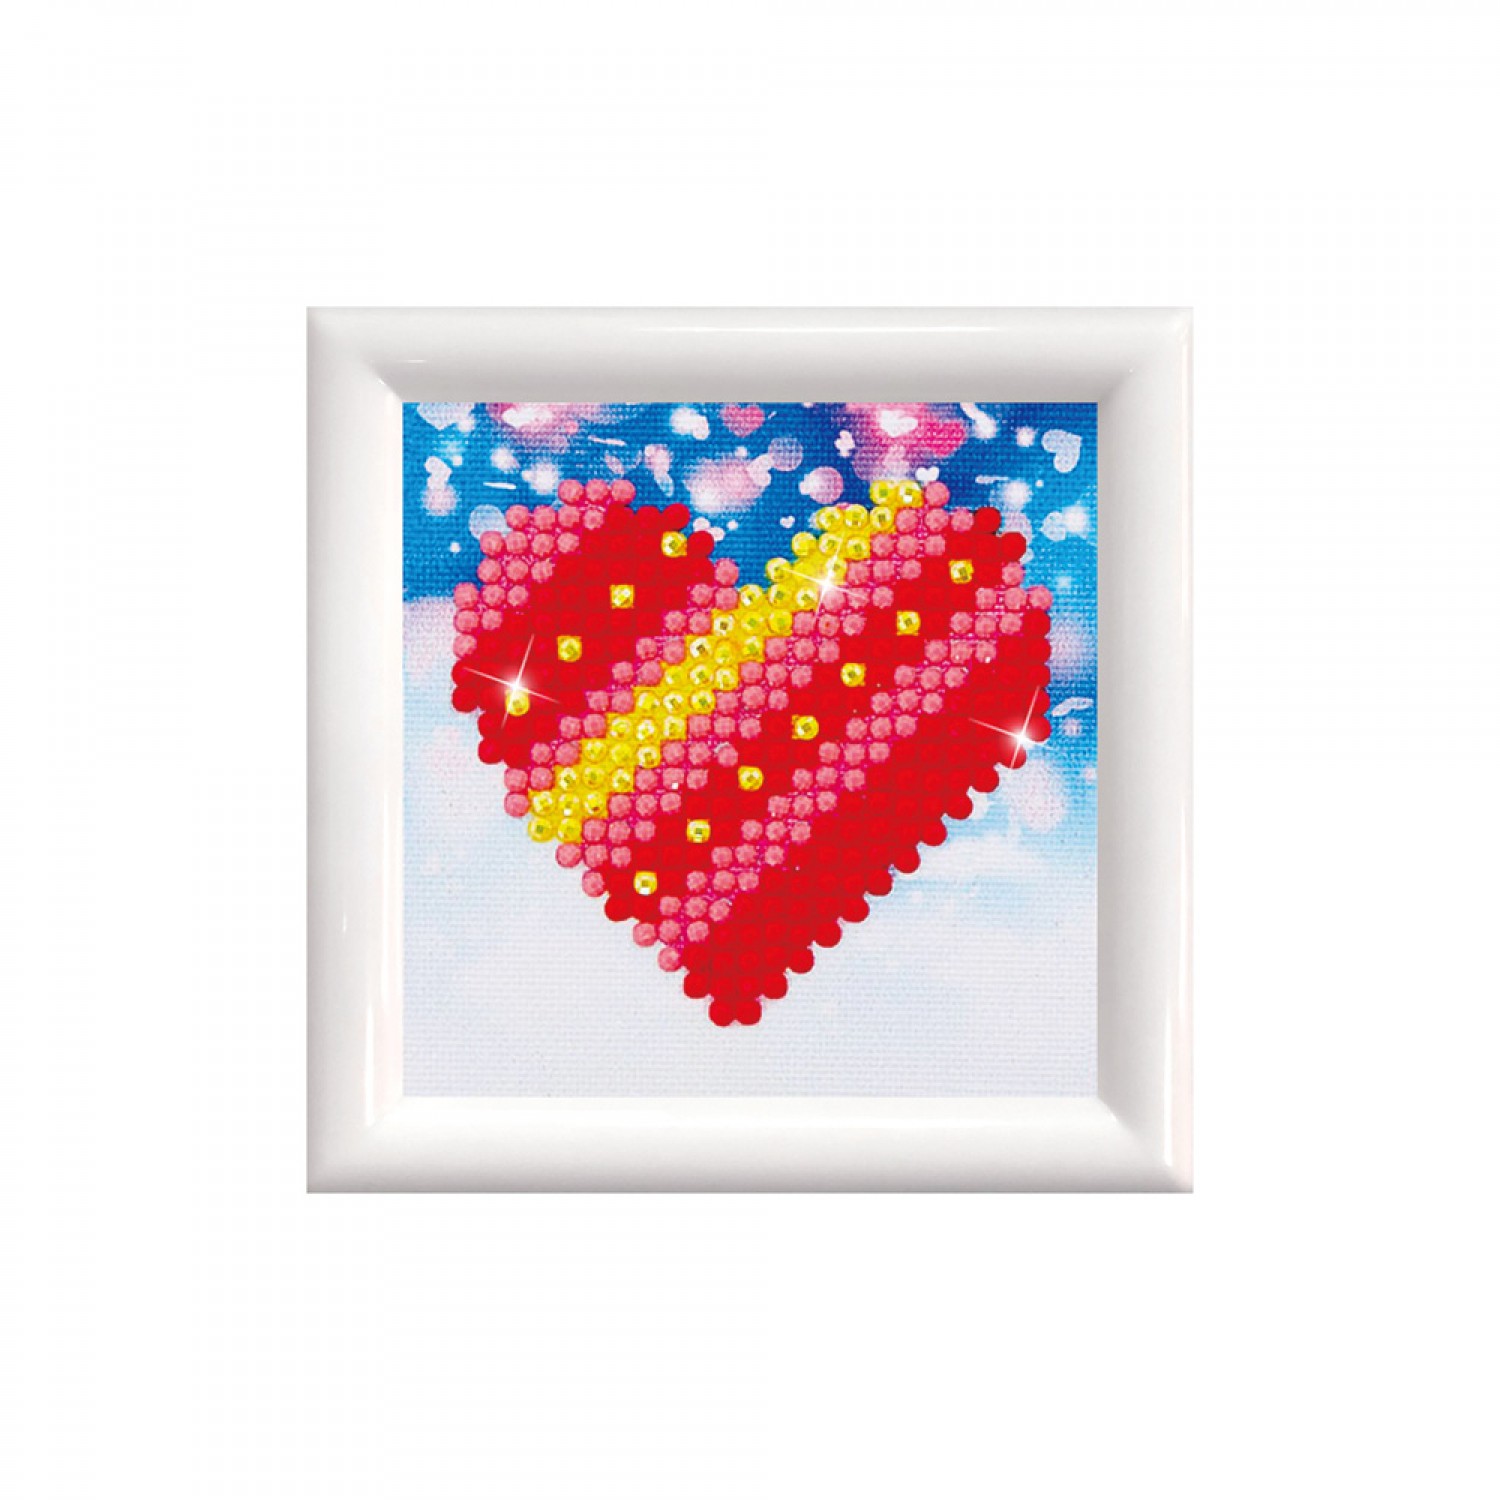 Diamond Dotz Facet Art Kit - Flower Heart